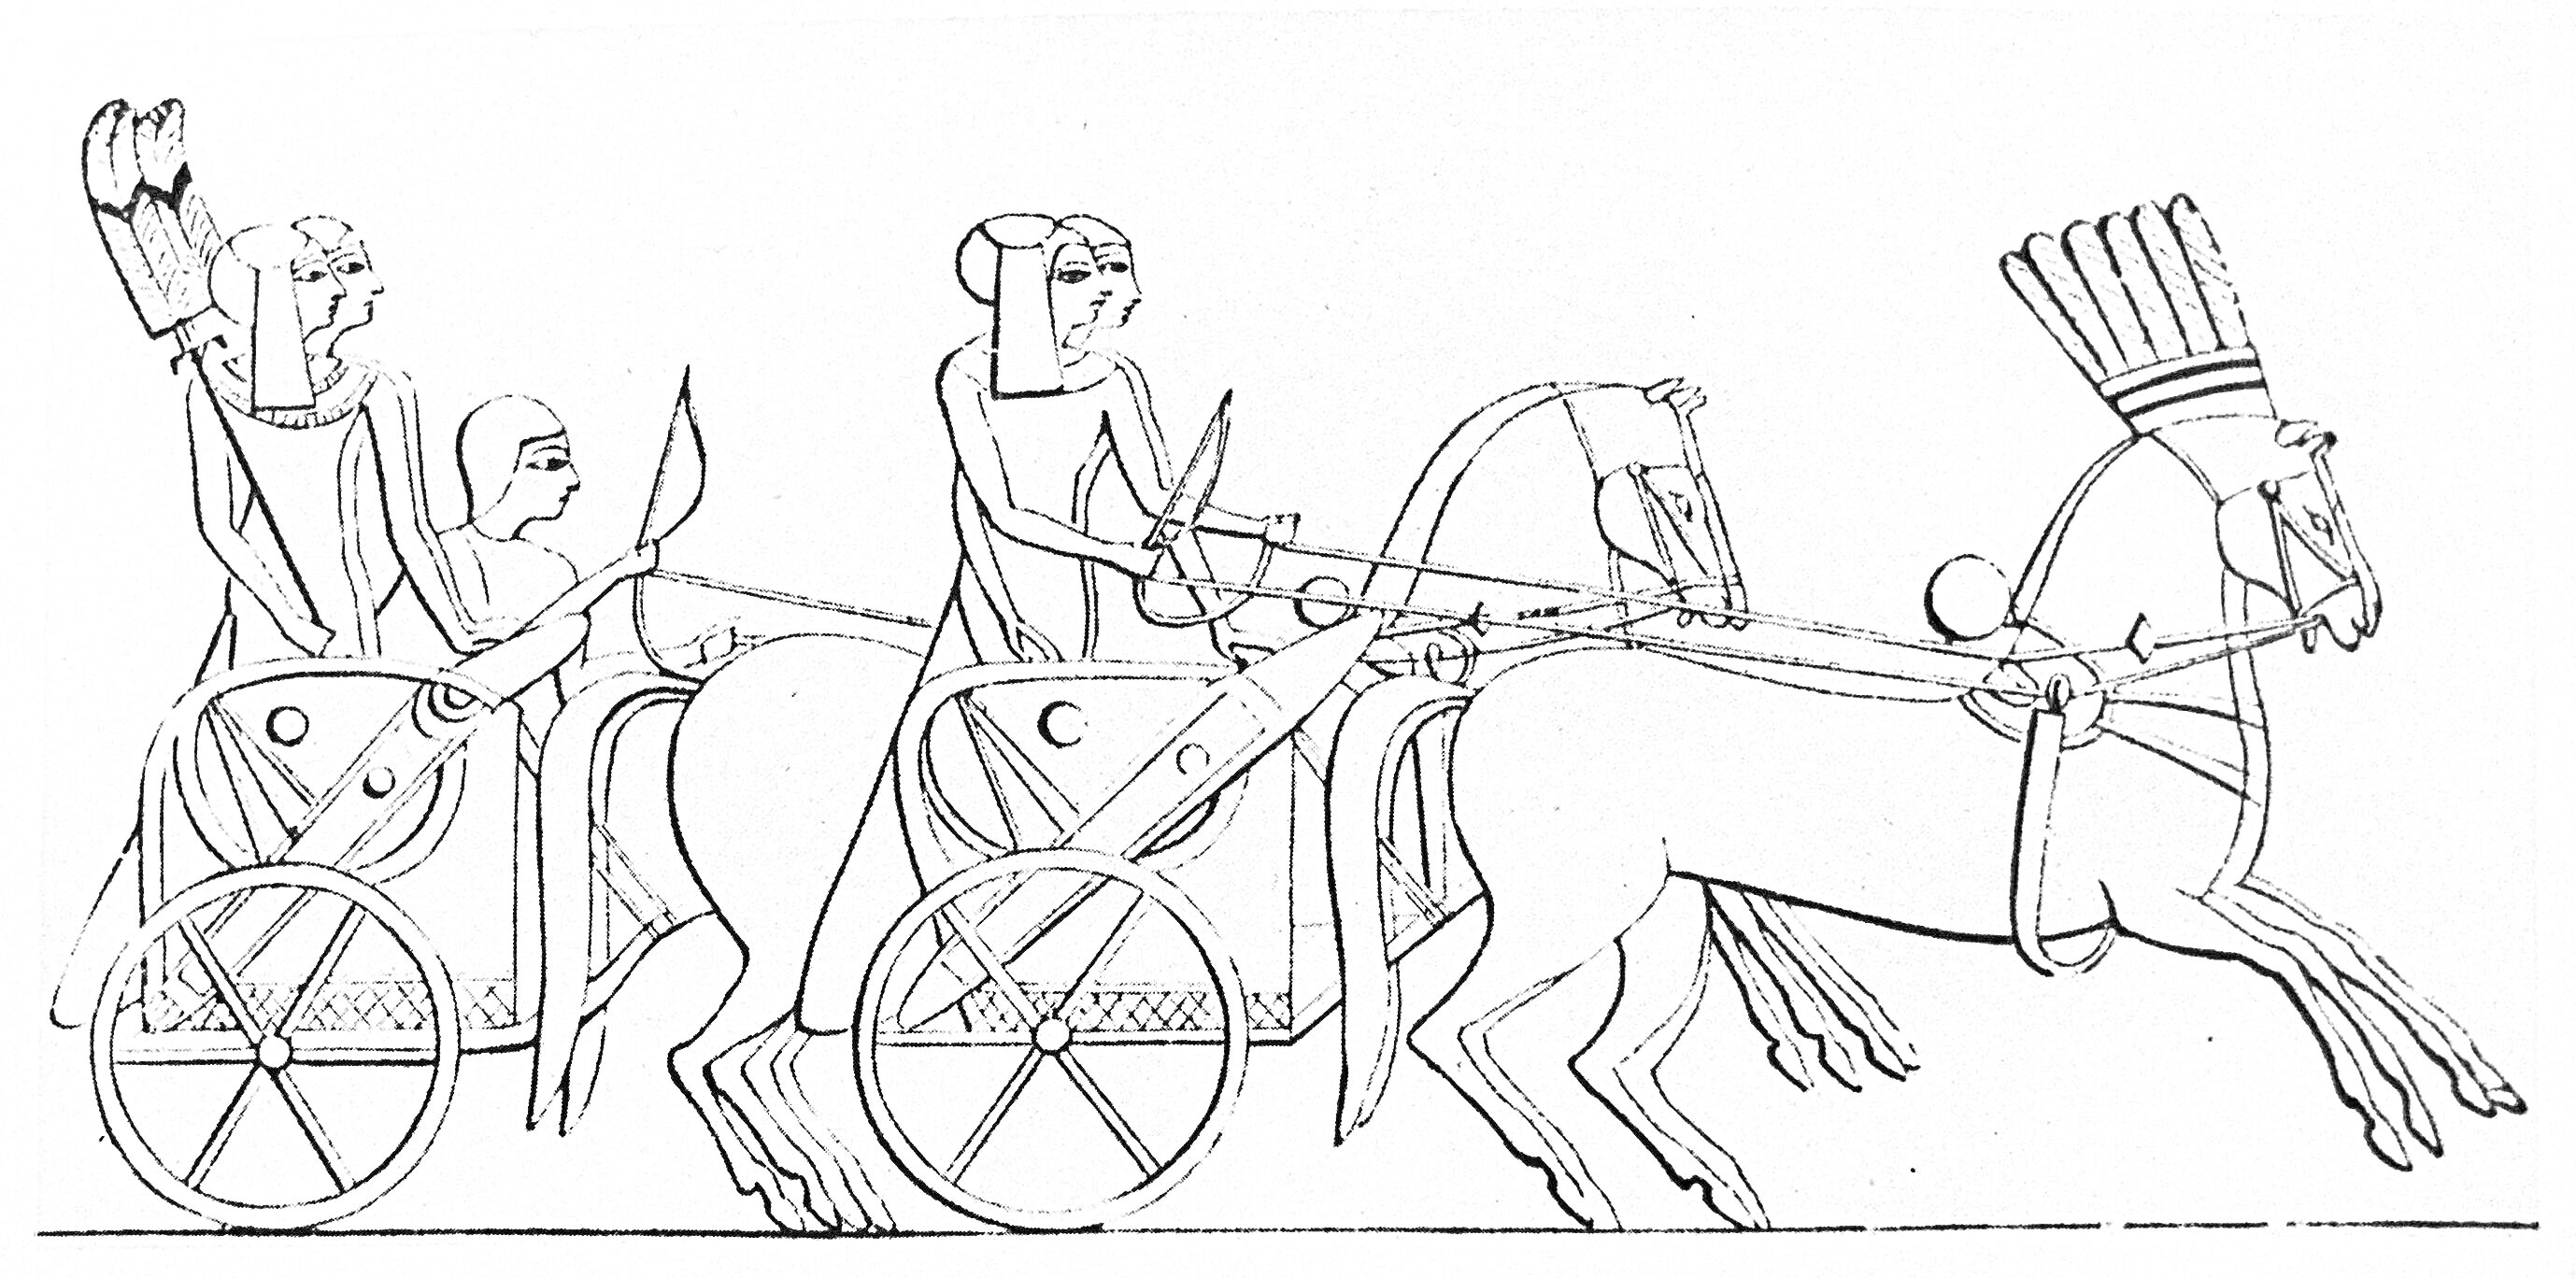 Раскраска Состязание колесниц. Два человека на колесницах с лучниками, запряженные лошадьми.